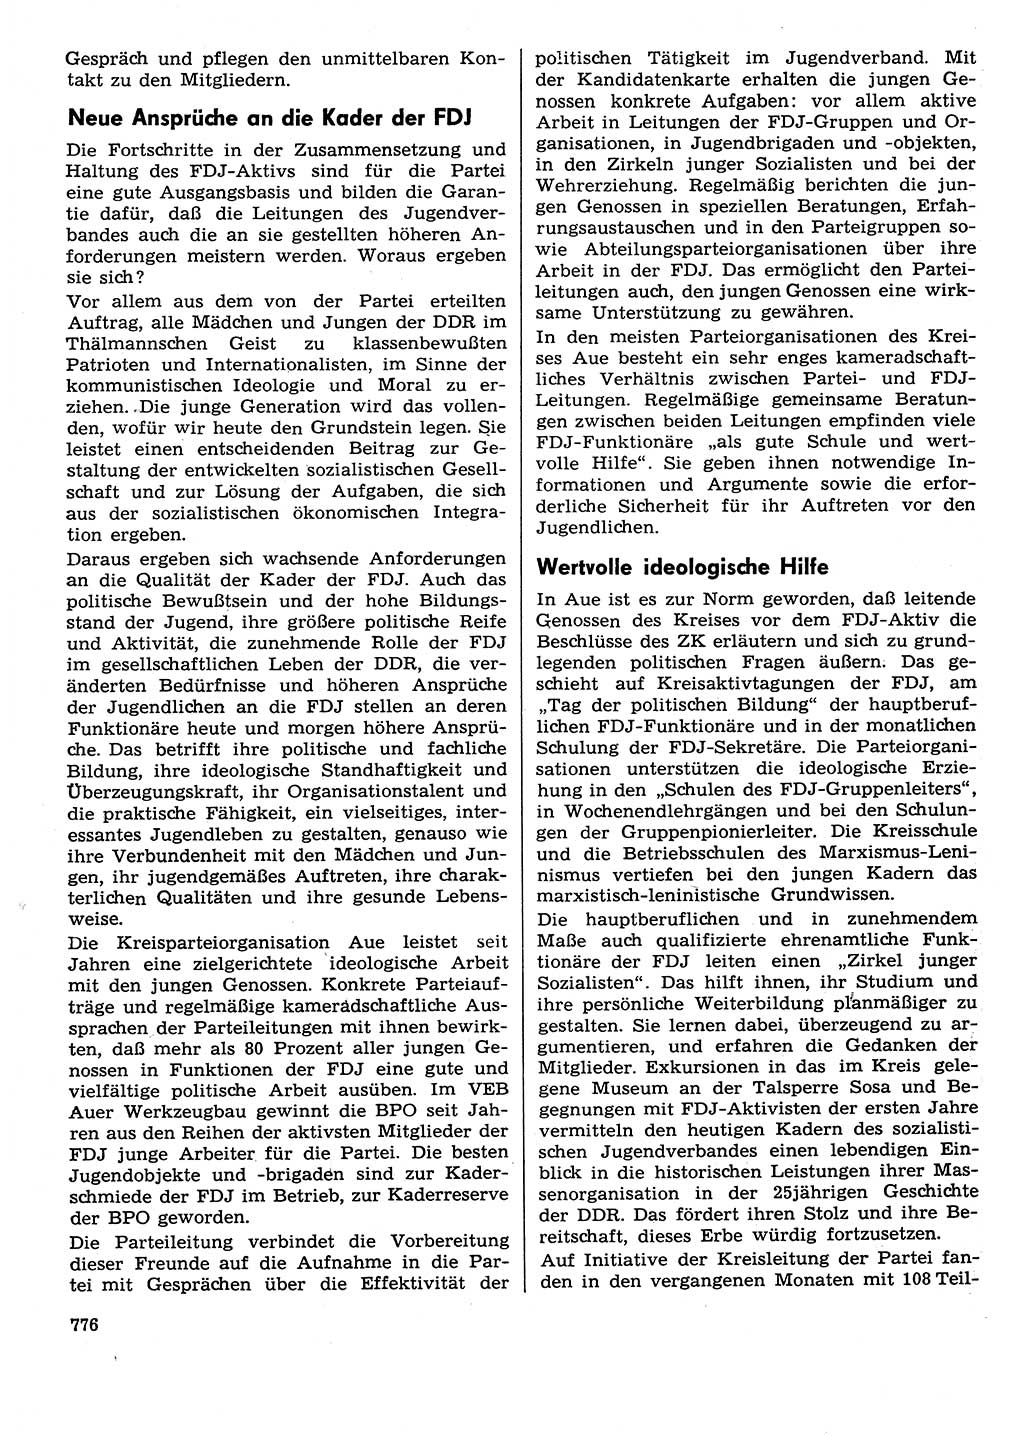 Neuer Weg (NW), Organ des Zentralkomitees (ZK) der SED (Sozialistische Einheitspartei Deutschlands) für Fragen des Parteilebens, 29. Jahrgang [Deutsche Demokratische Republik (DDR)] 1974, Seite 776 (NW ZK SED DDR 1974, S. 776)